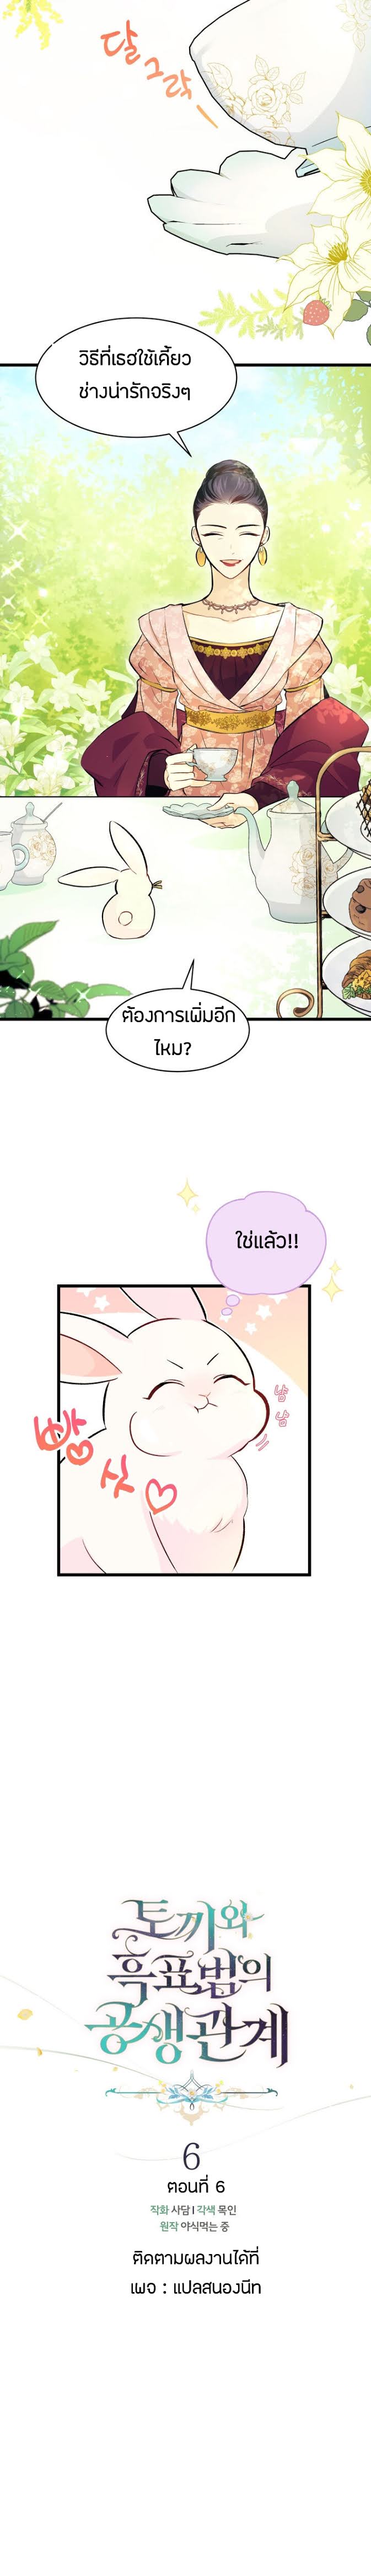 rabbit6 07